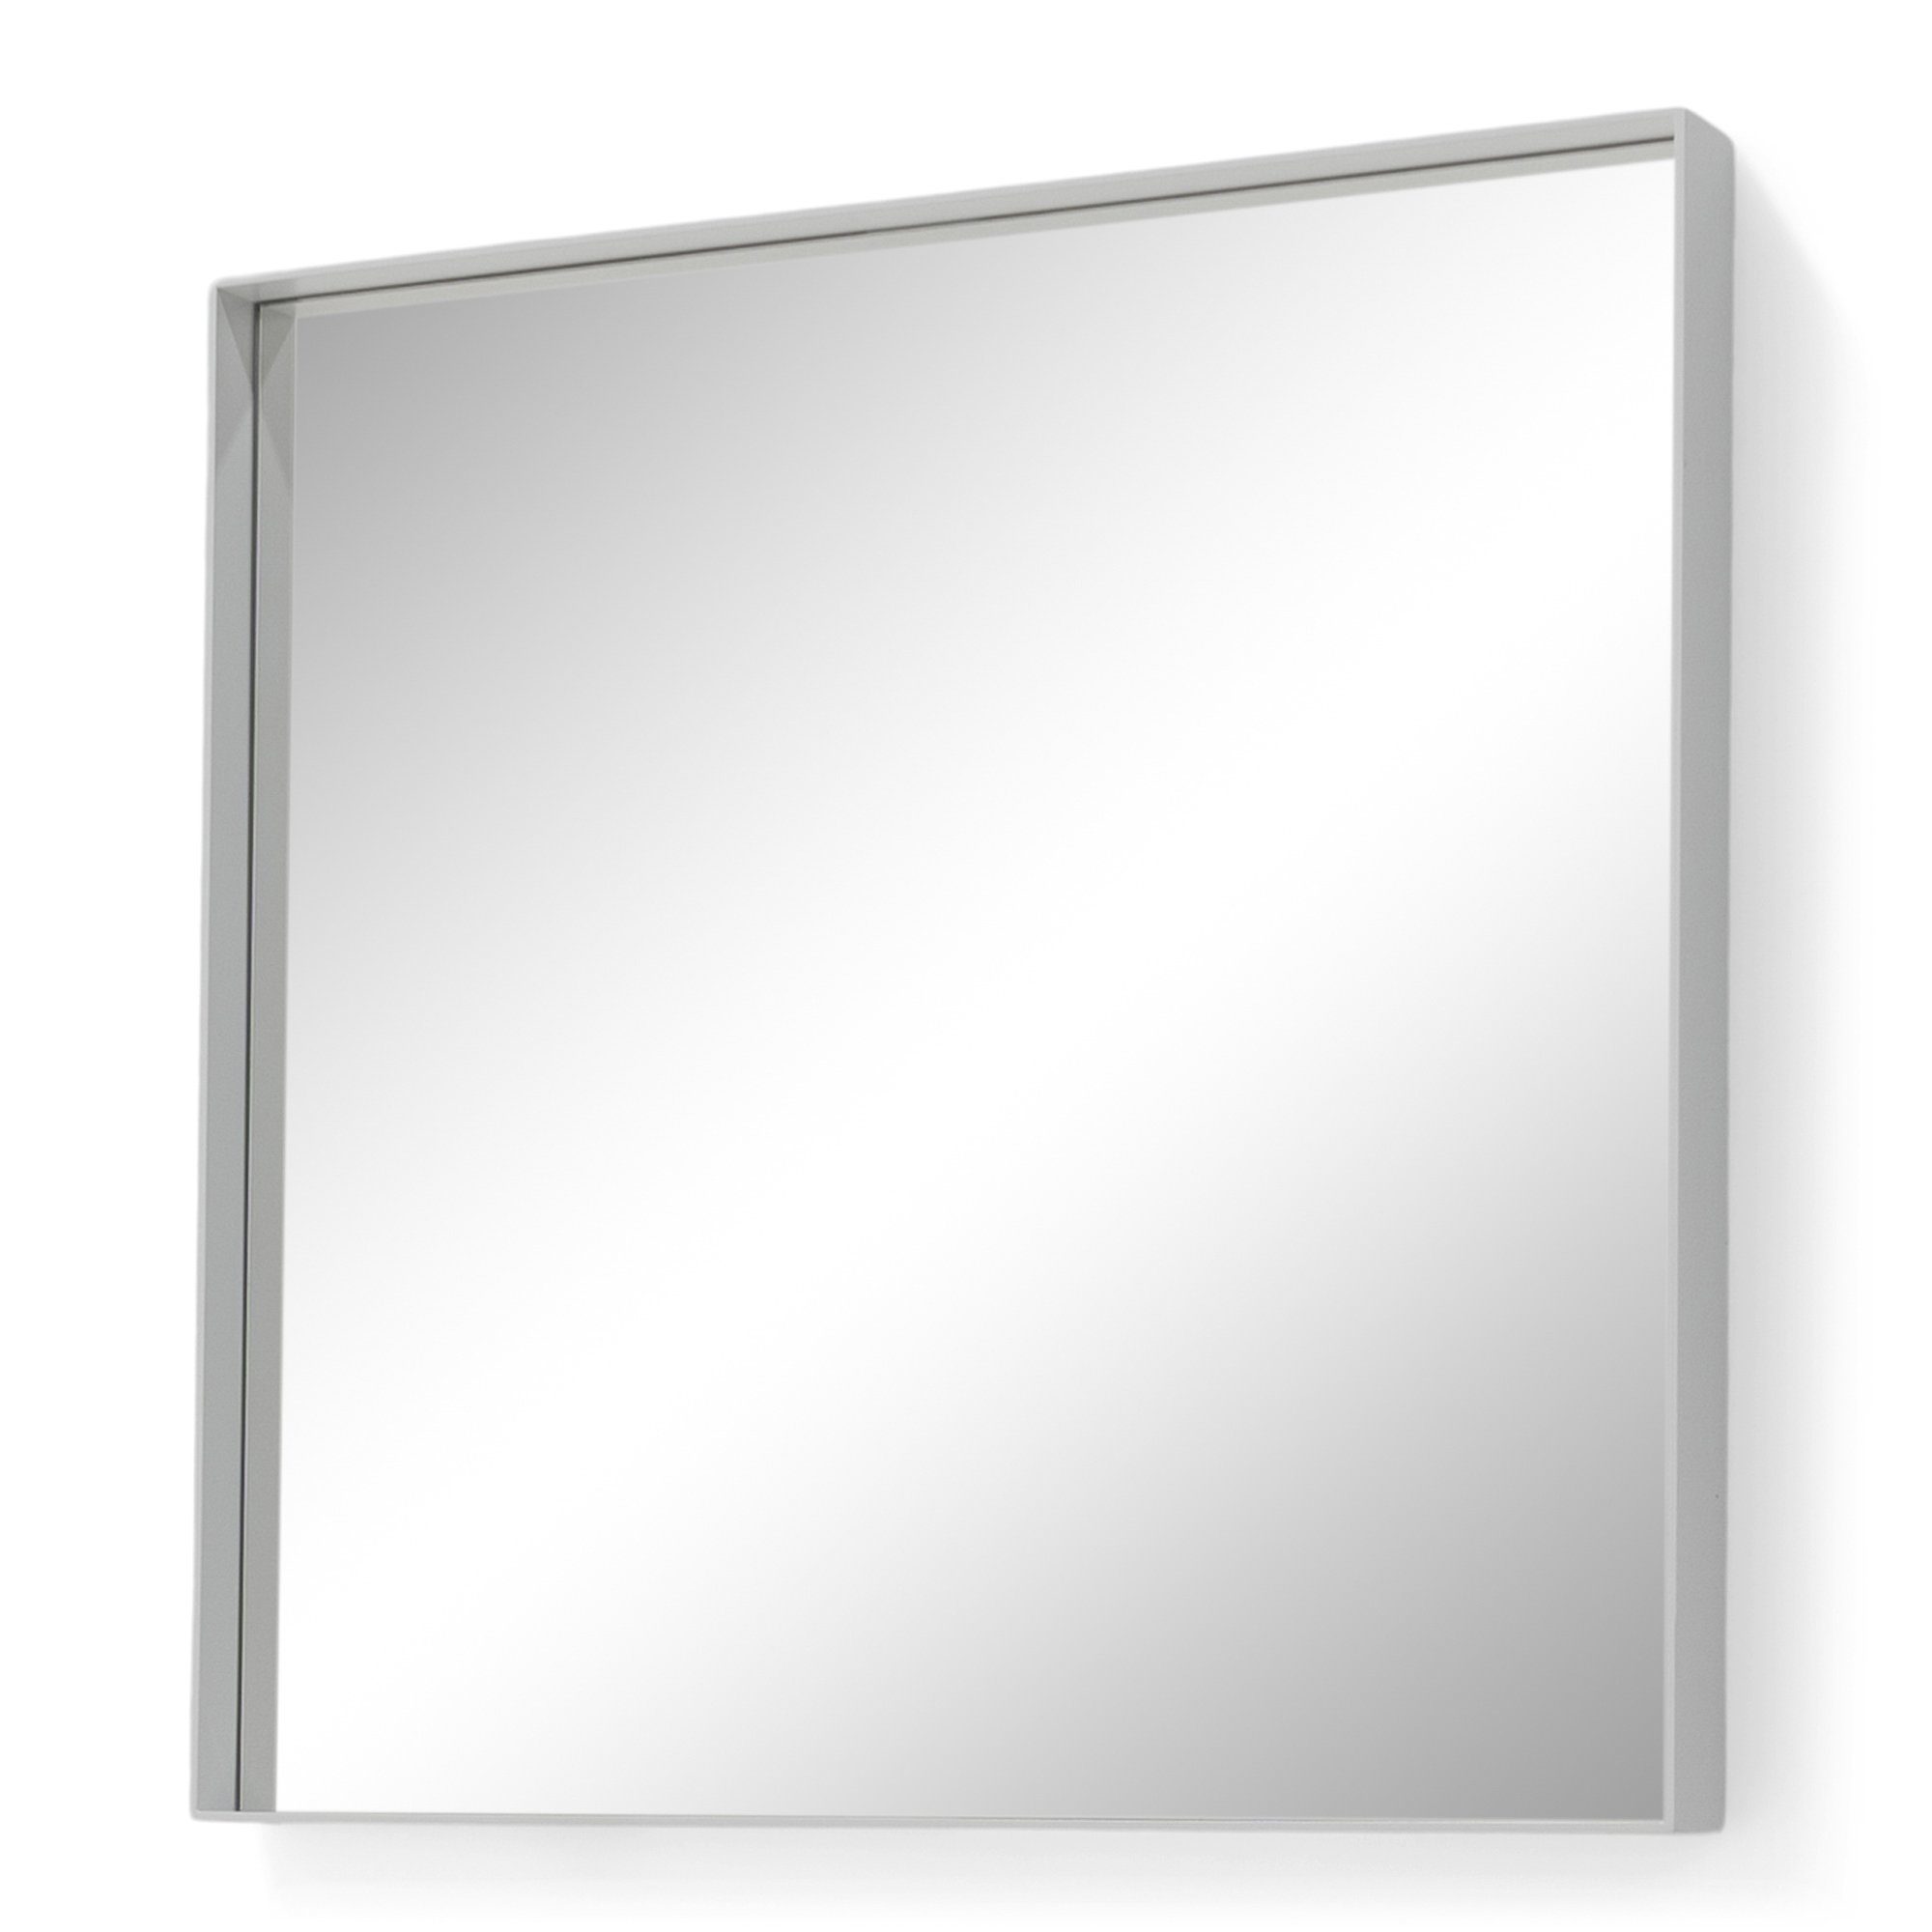 Spinder Design Donna 2 Weiß | Eckig Spiegel 60x60cm Spiegel Spinder weiß weiß